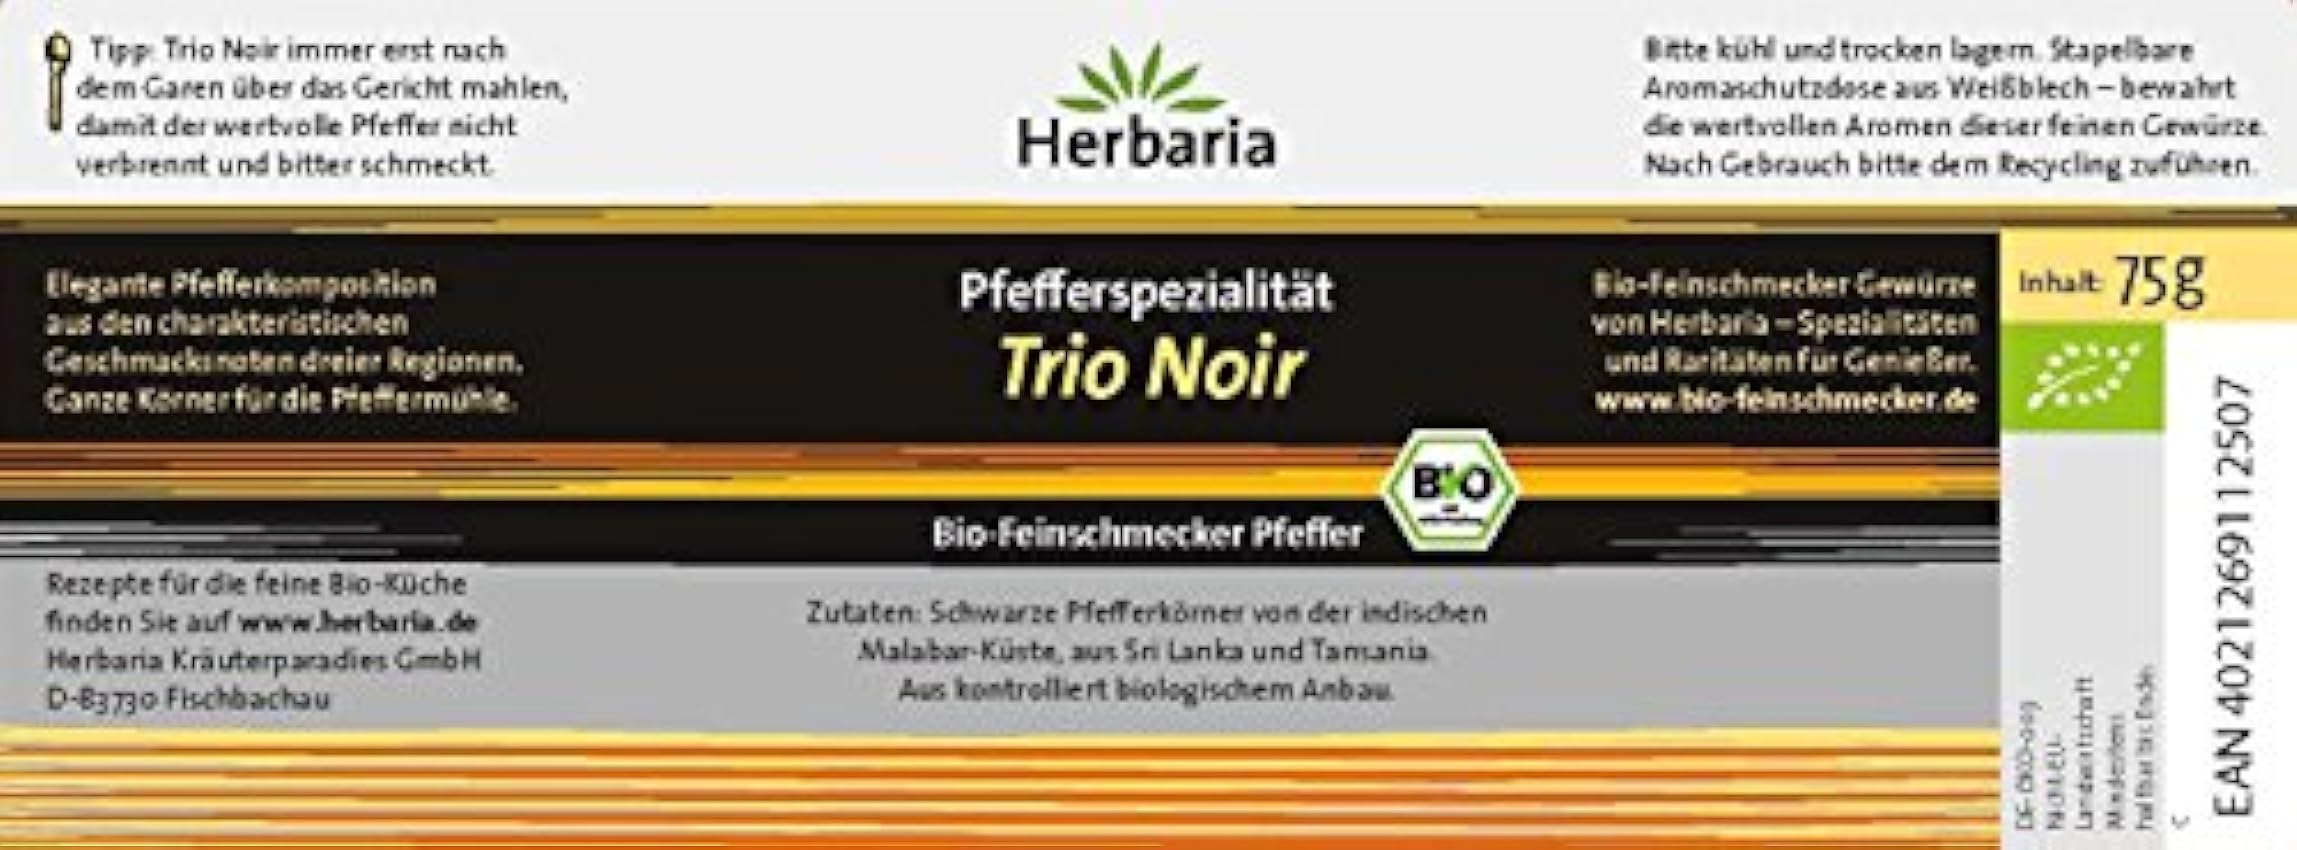 Herbaria Trio Noir Poivre noir avec M-Box, Pack de 1 (1 x 75 gr) - Bio lz8TSdYH